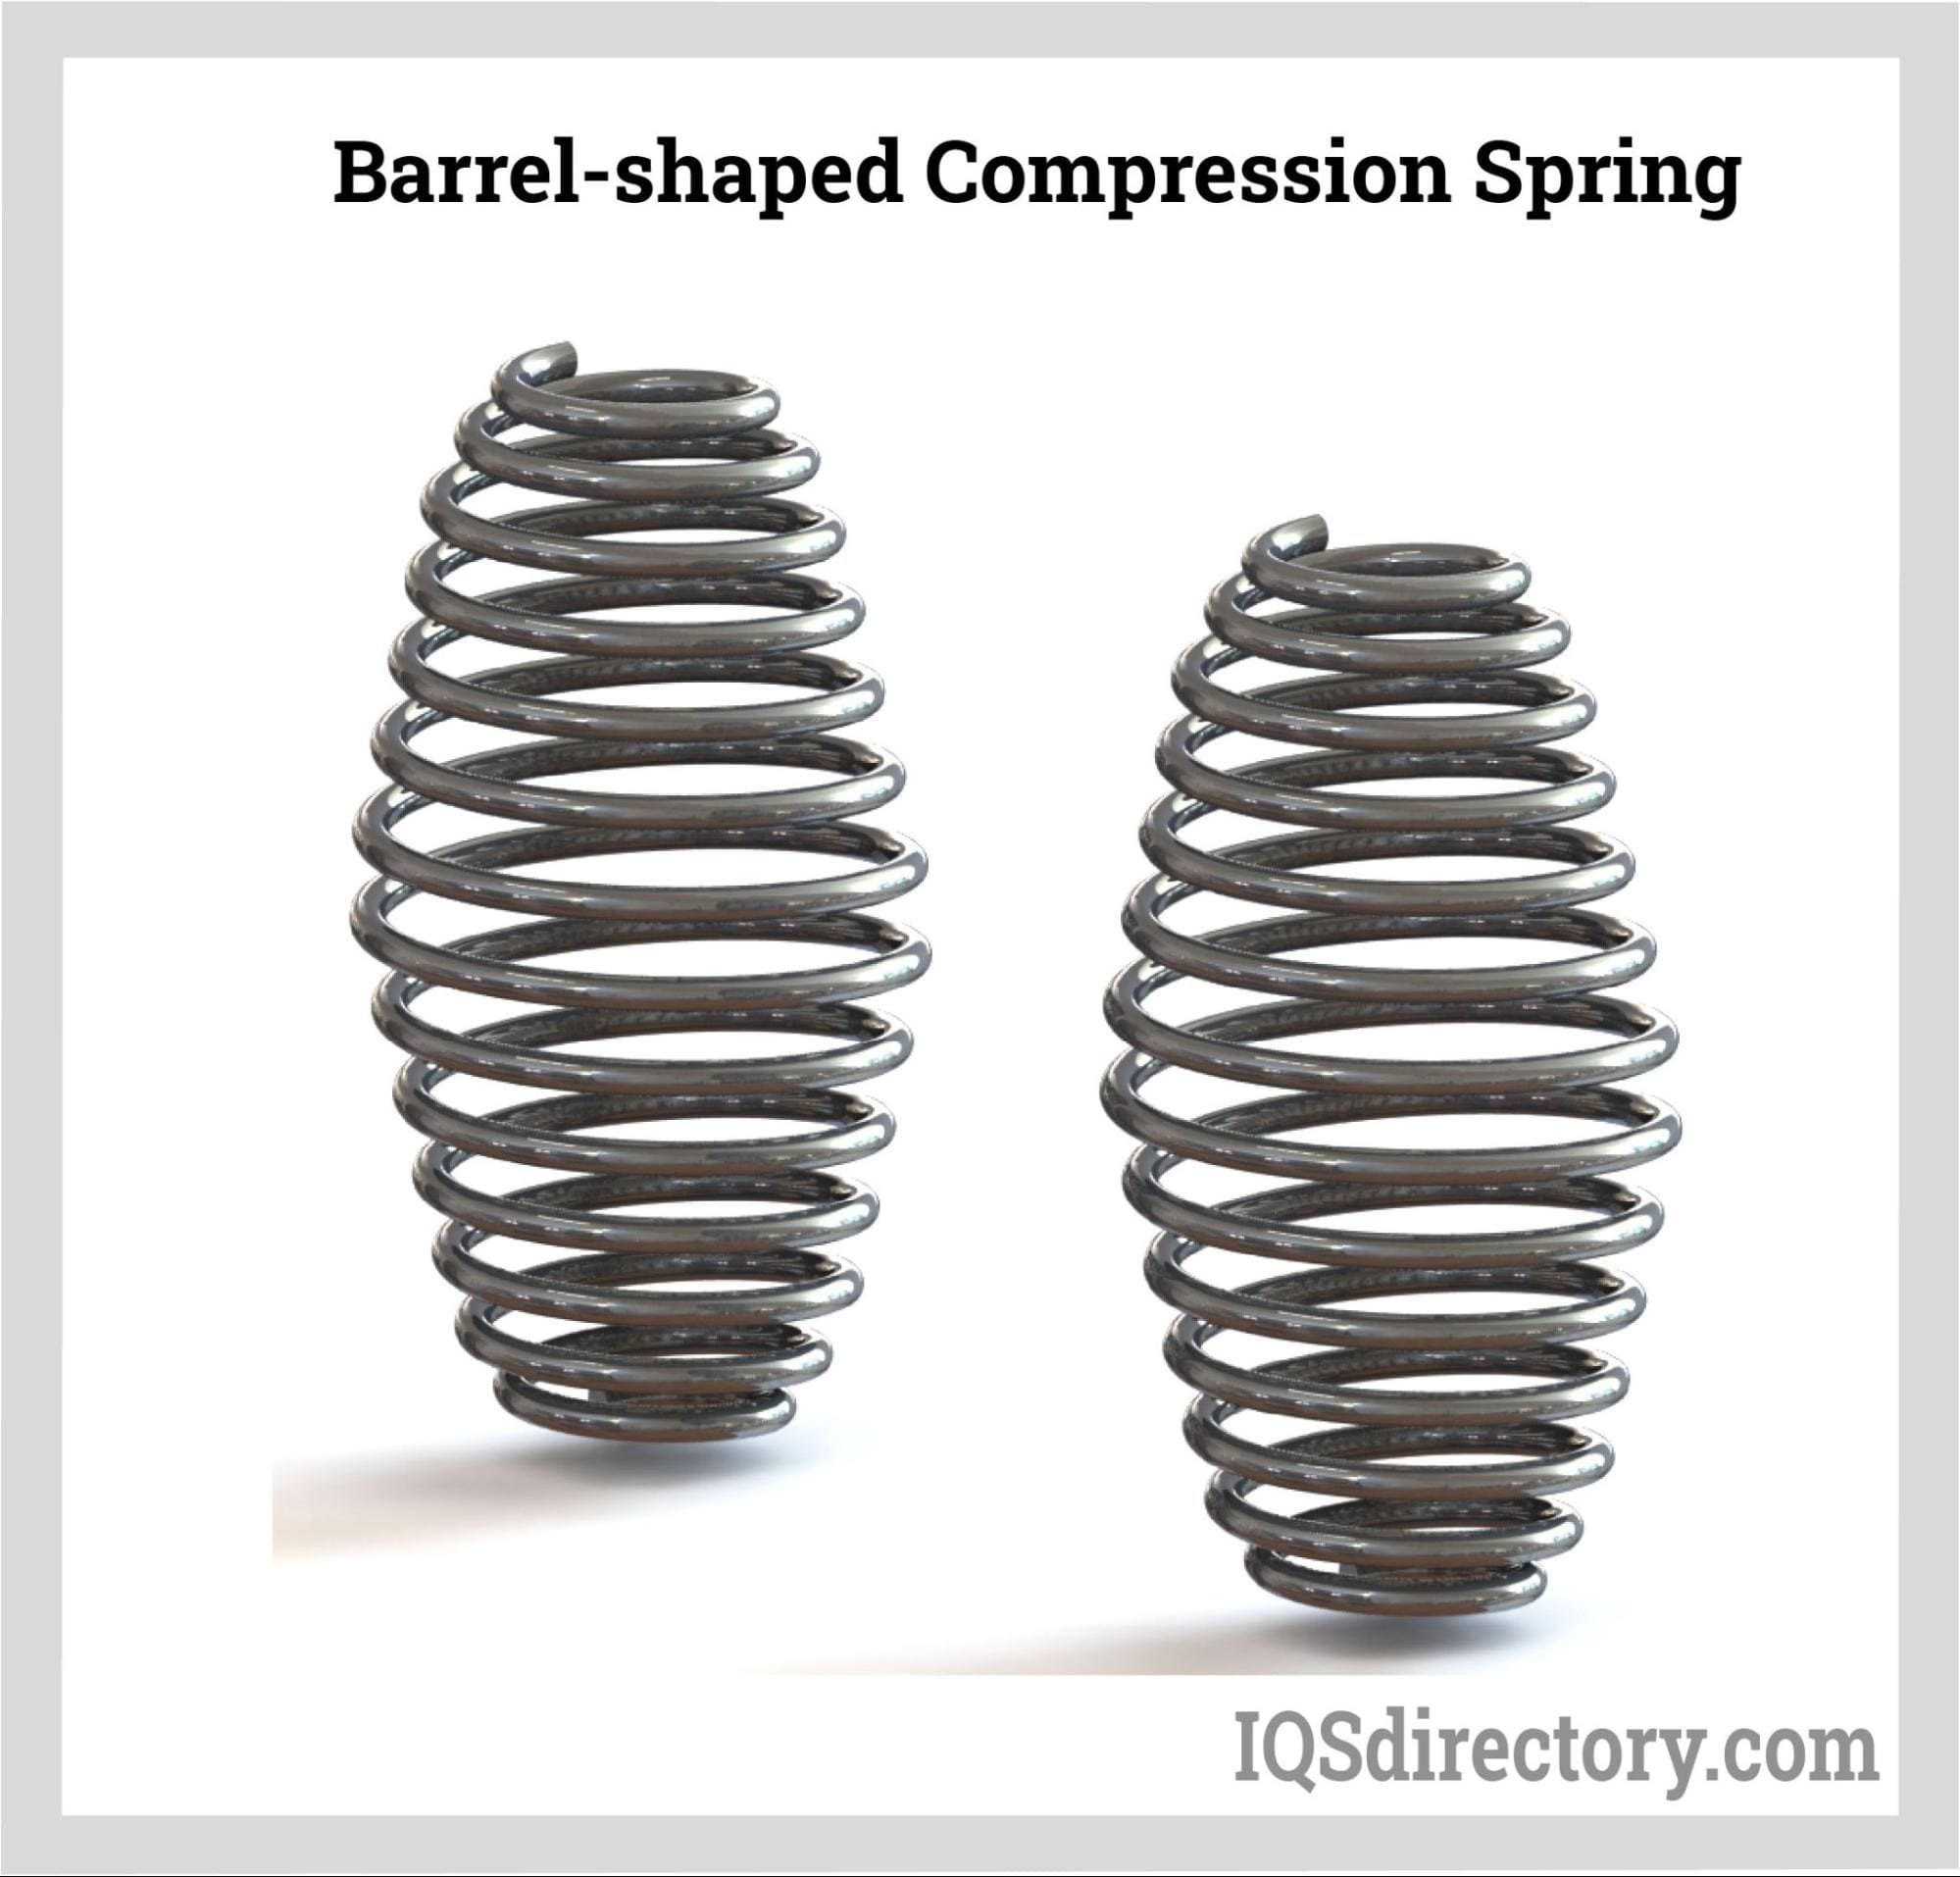 Barrel-shaped Compression Spring